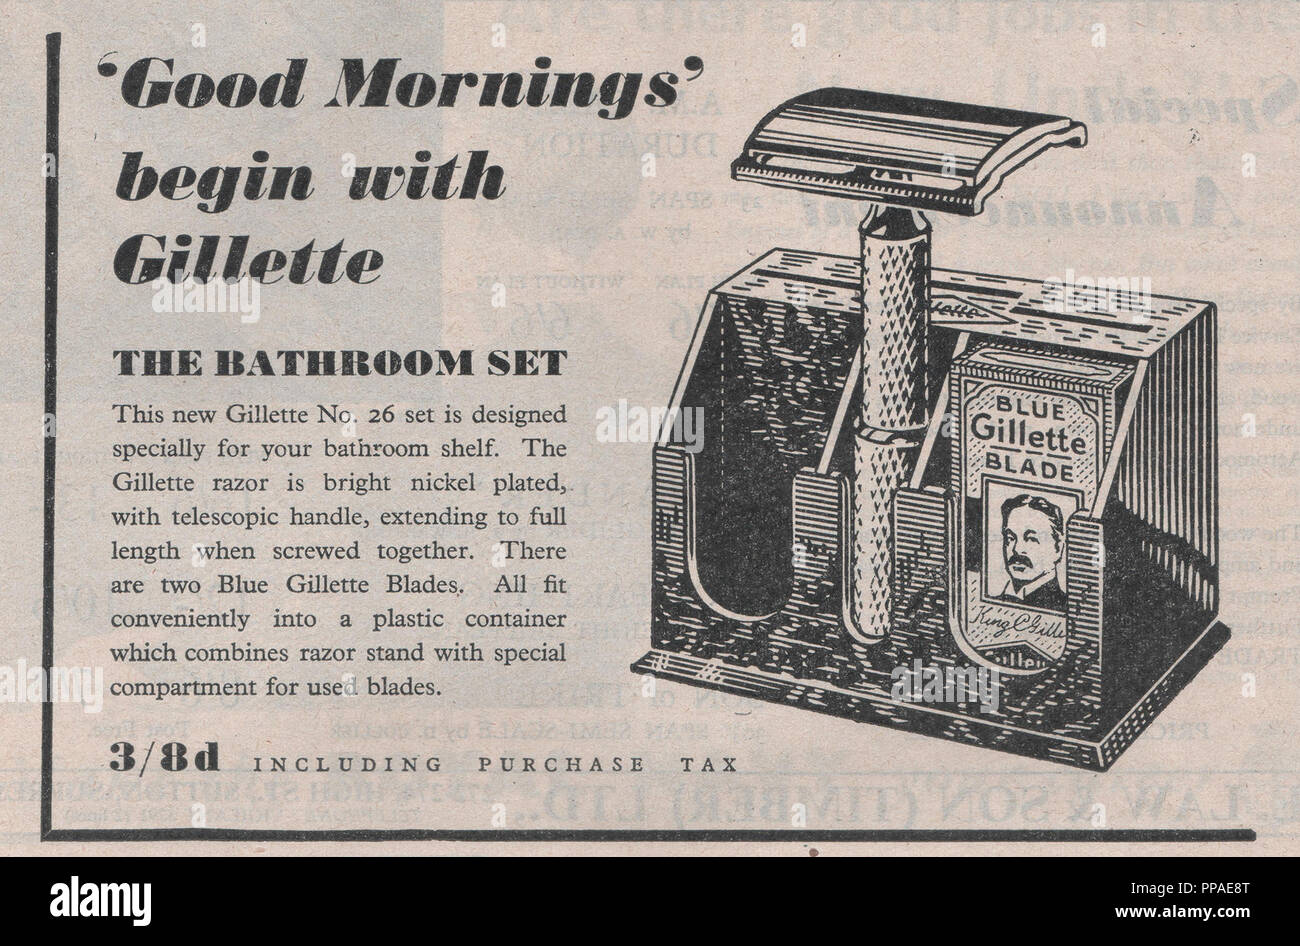 Gillette lame da rasoio vintage annuncio rivista con la linea di cinghia di buon mattino iniziano con Gillette, la pubblicità di un bagno set di rasatura pubblicato ad ottobre 1946 Foto Stock